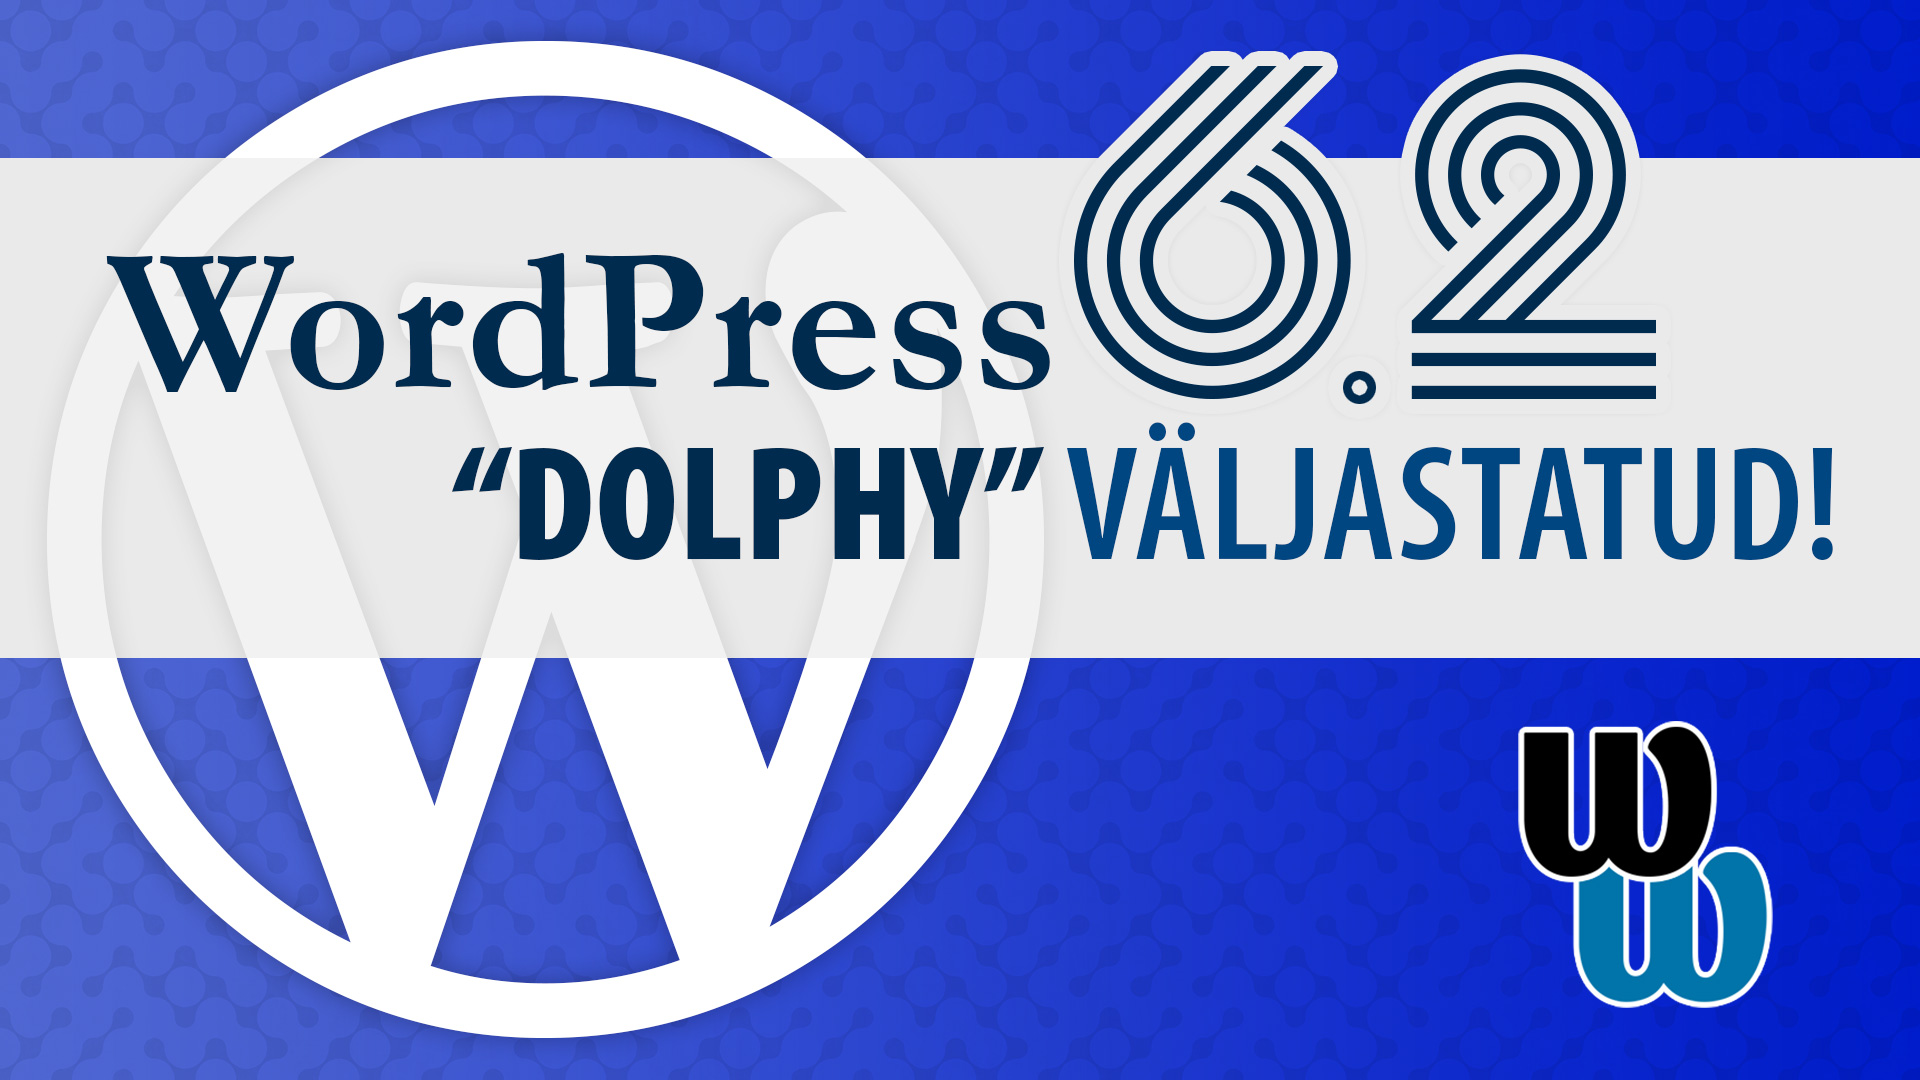 WordPress 6.2 "Dolphy" väljastatud!